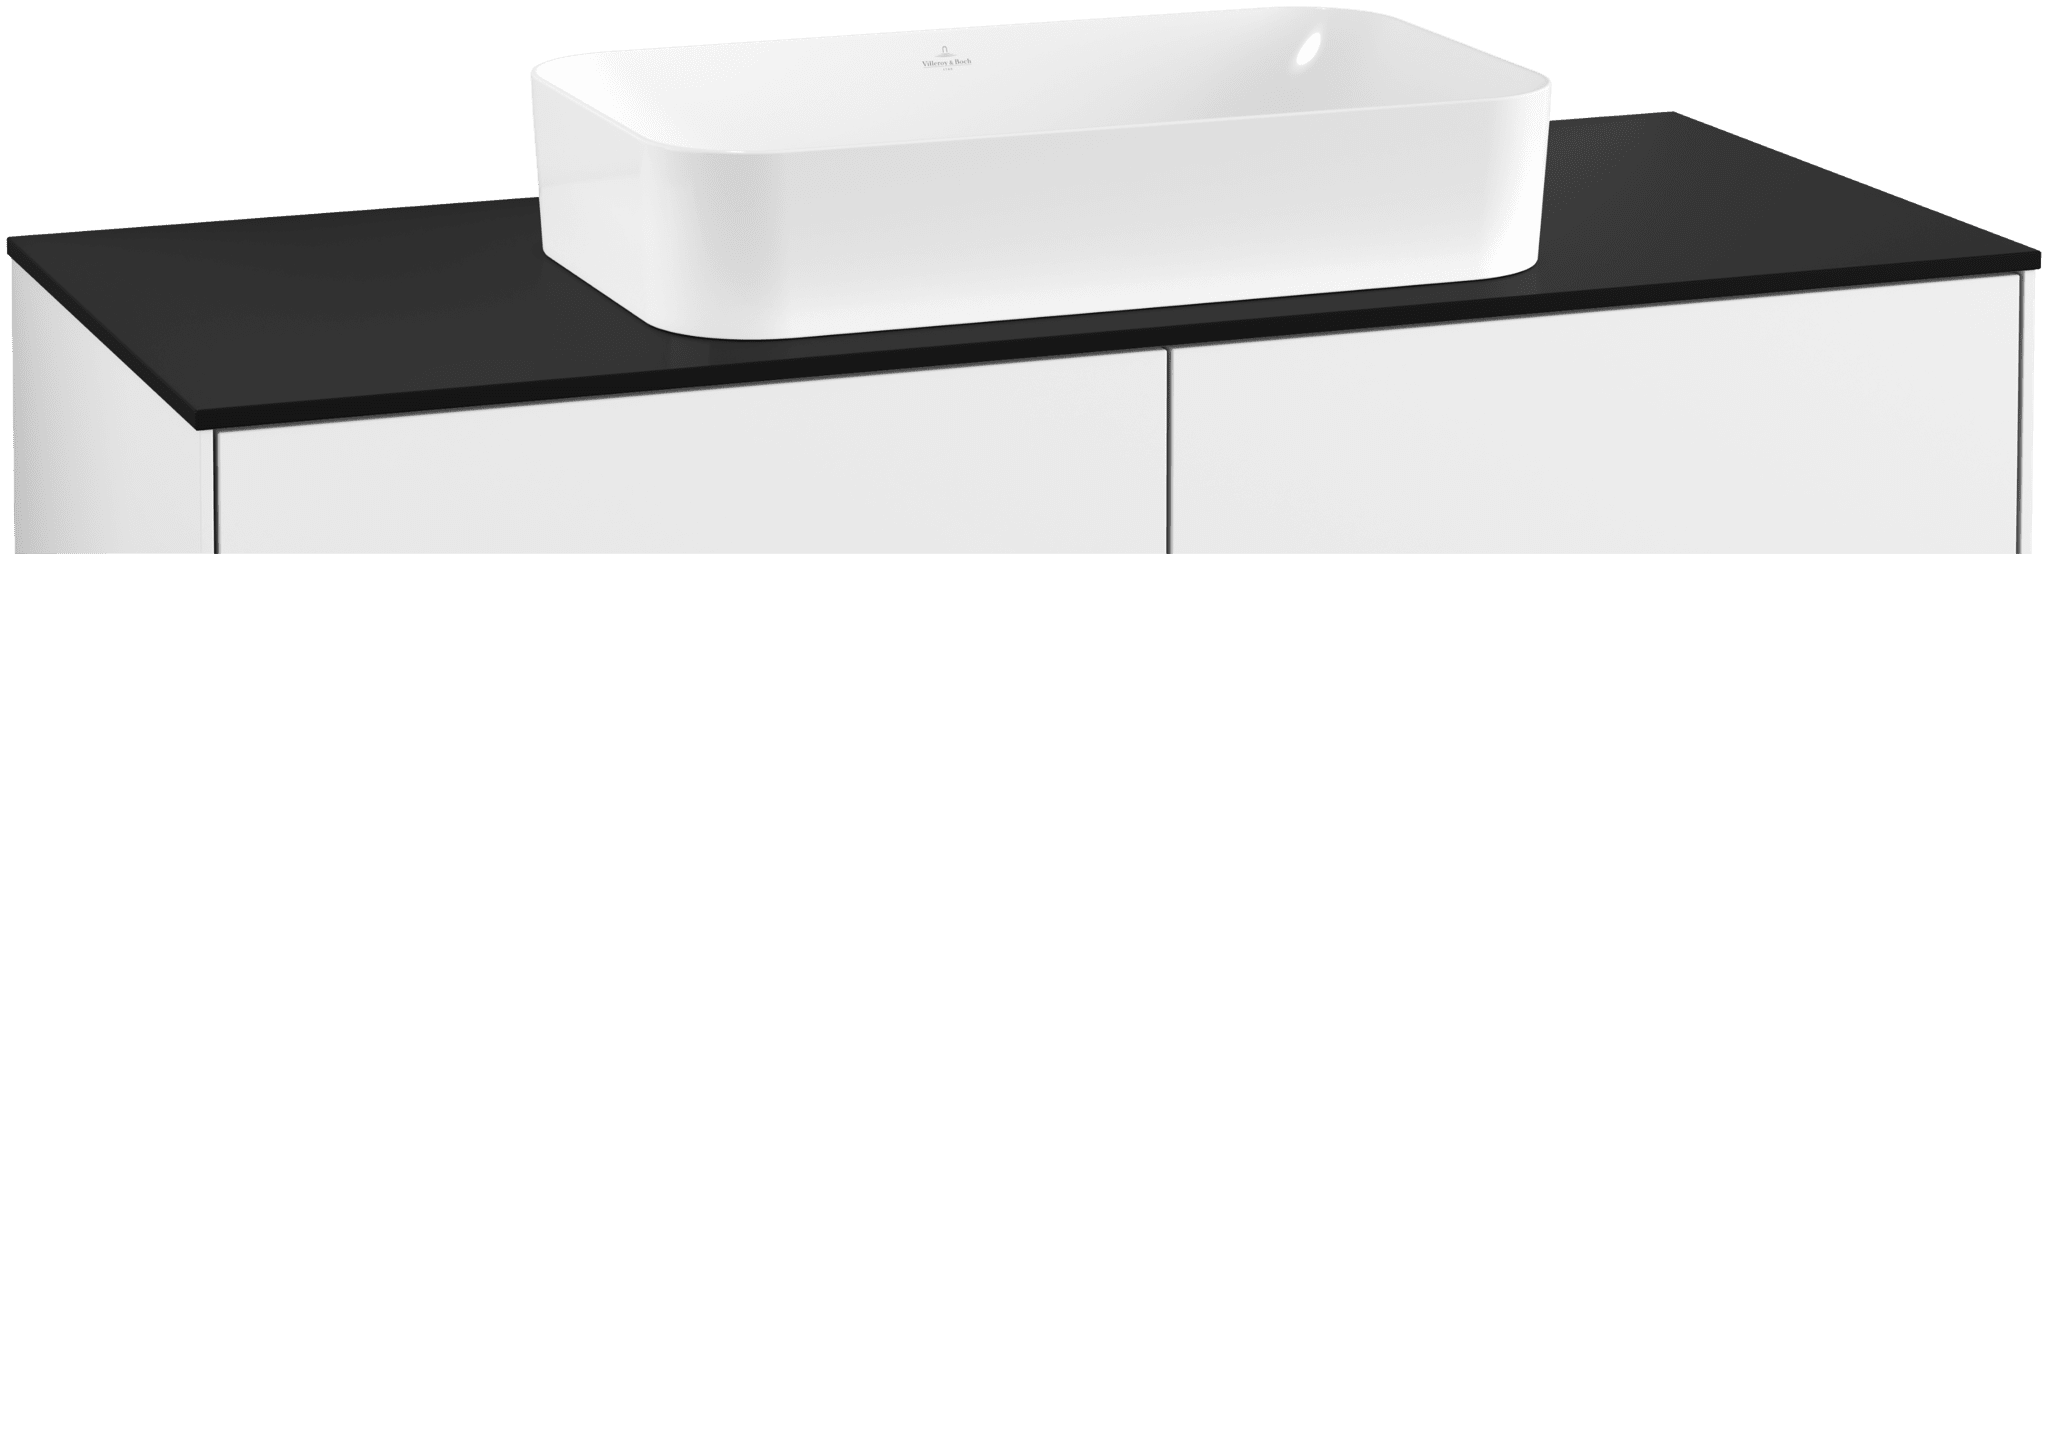 Bild von VILLEROY BOCH Finion Waschbeckenunterschrank, mit Beleuchtung, 4 Auszüge, 1200 x 603 x 501 mm, Glossy White Lacquer / Glass Black Matt #G26200GF